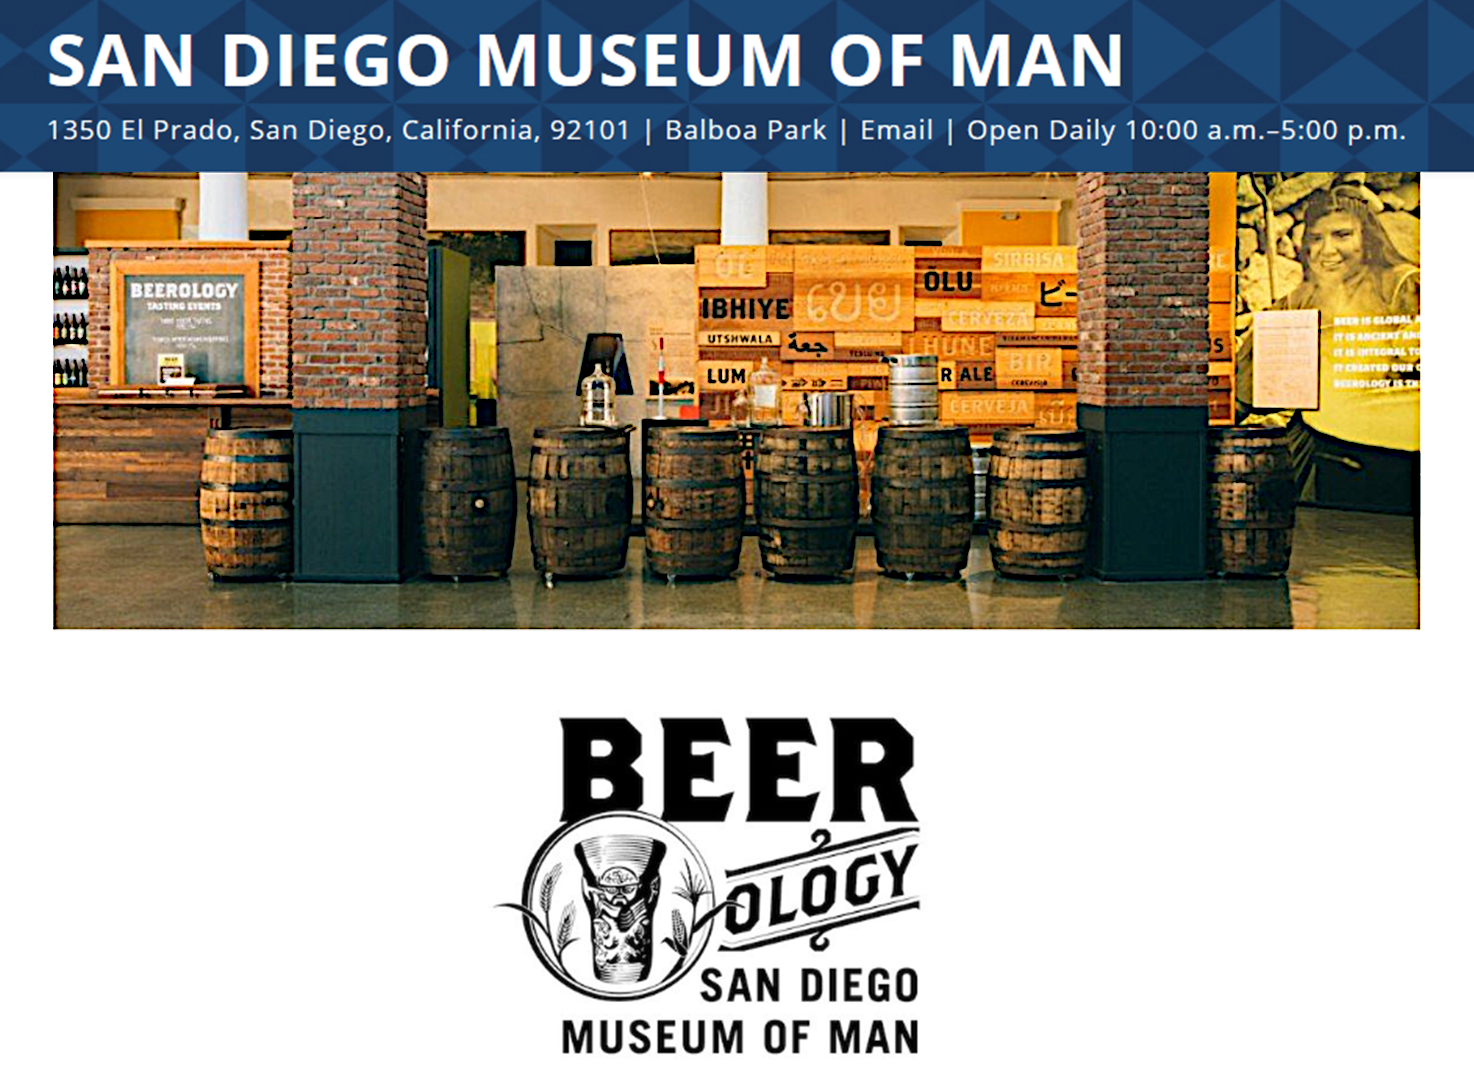 San Diego Museum of Man. Beerology